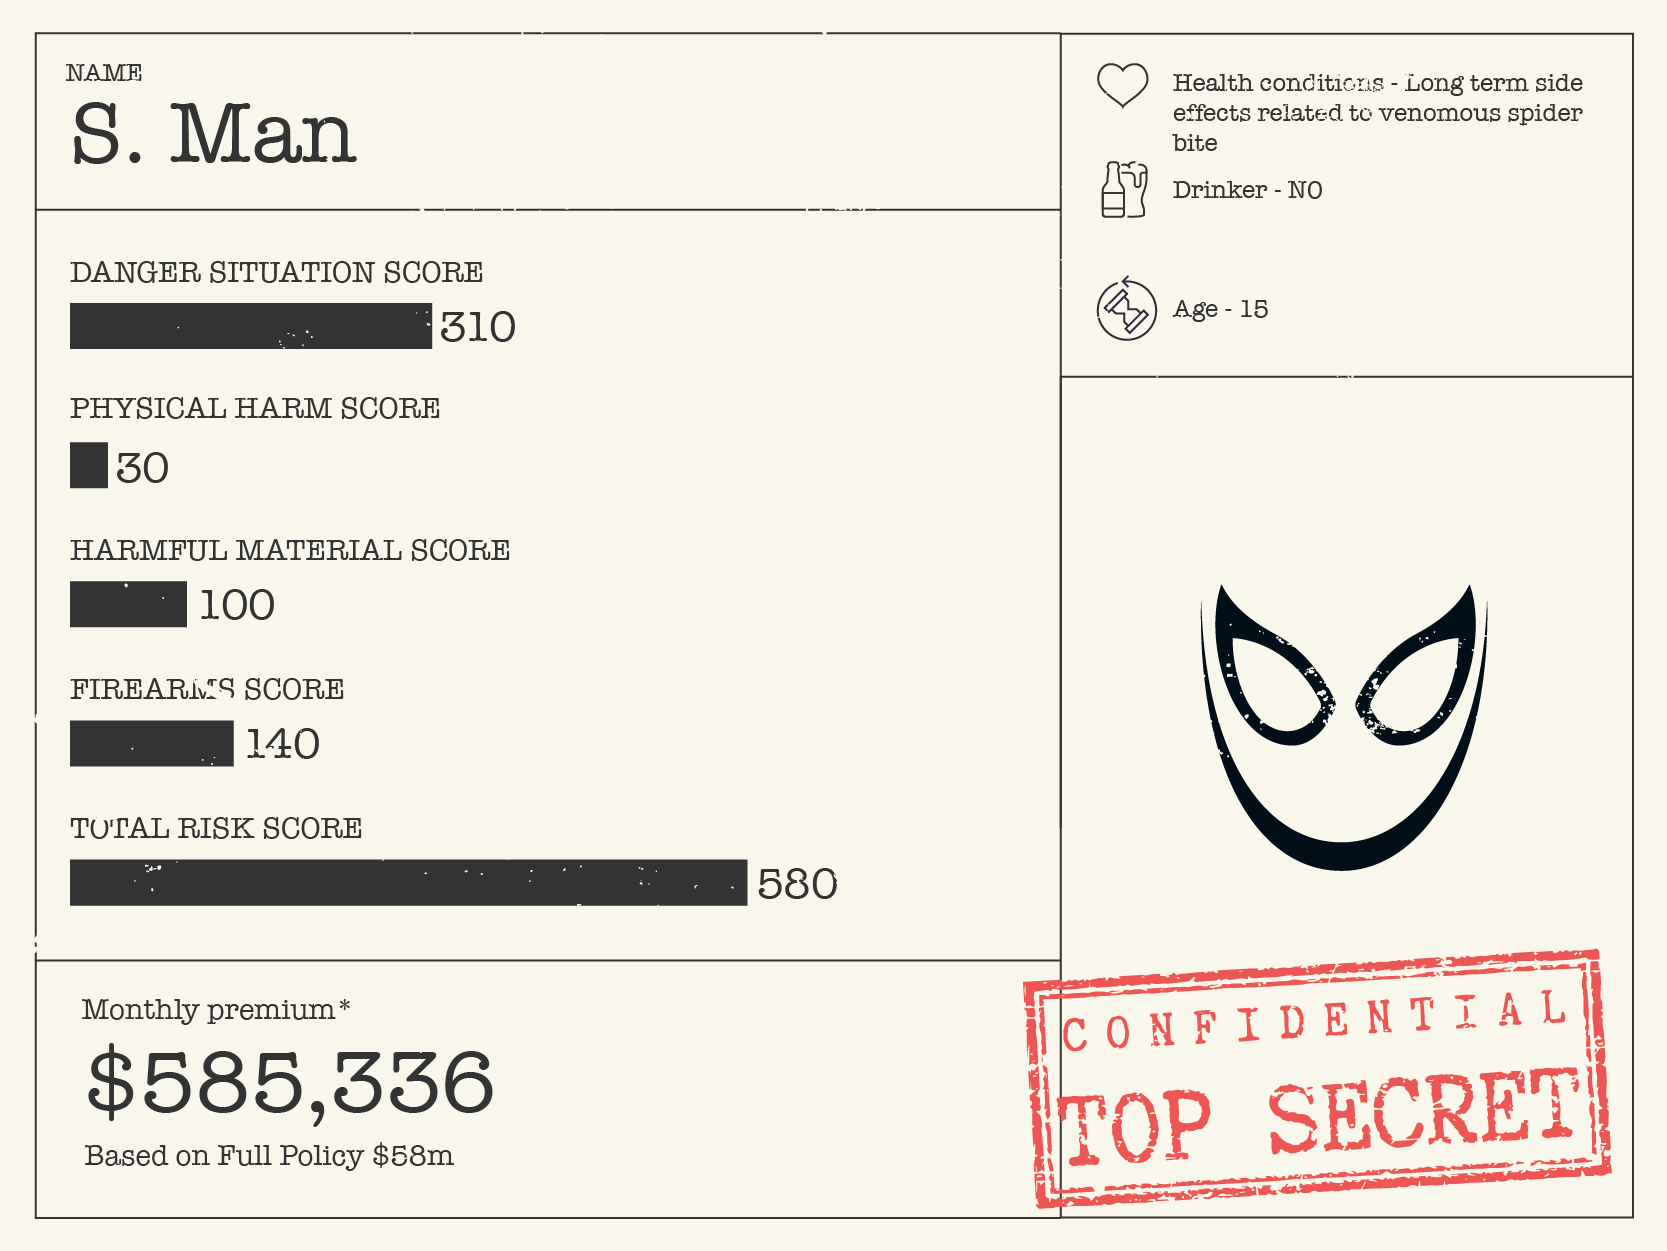 Spider-man costs